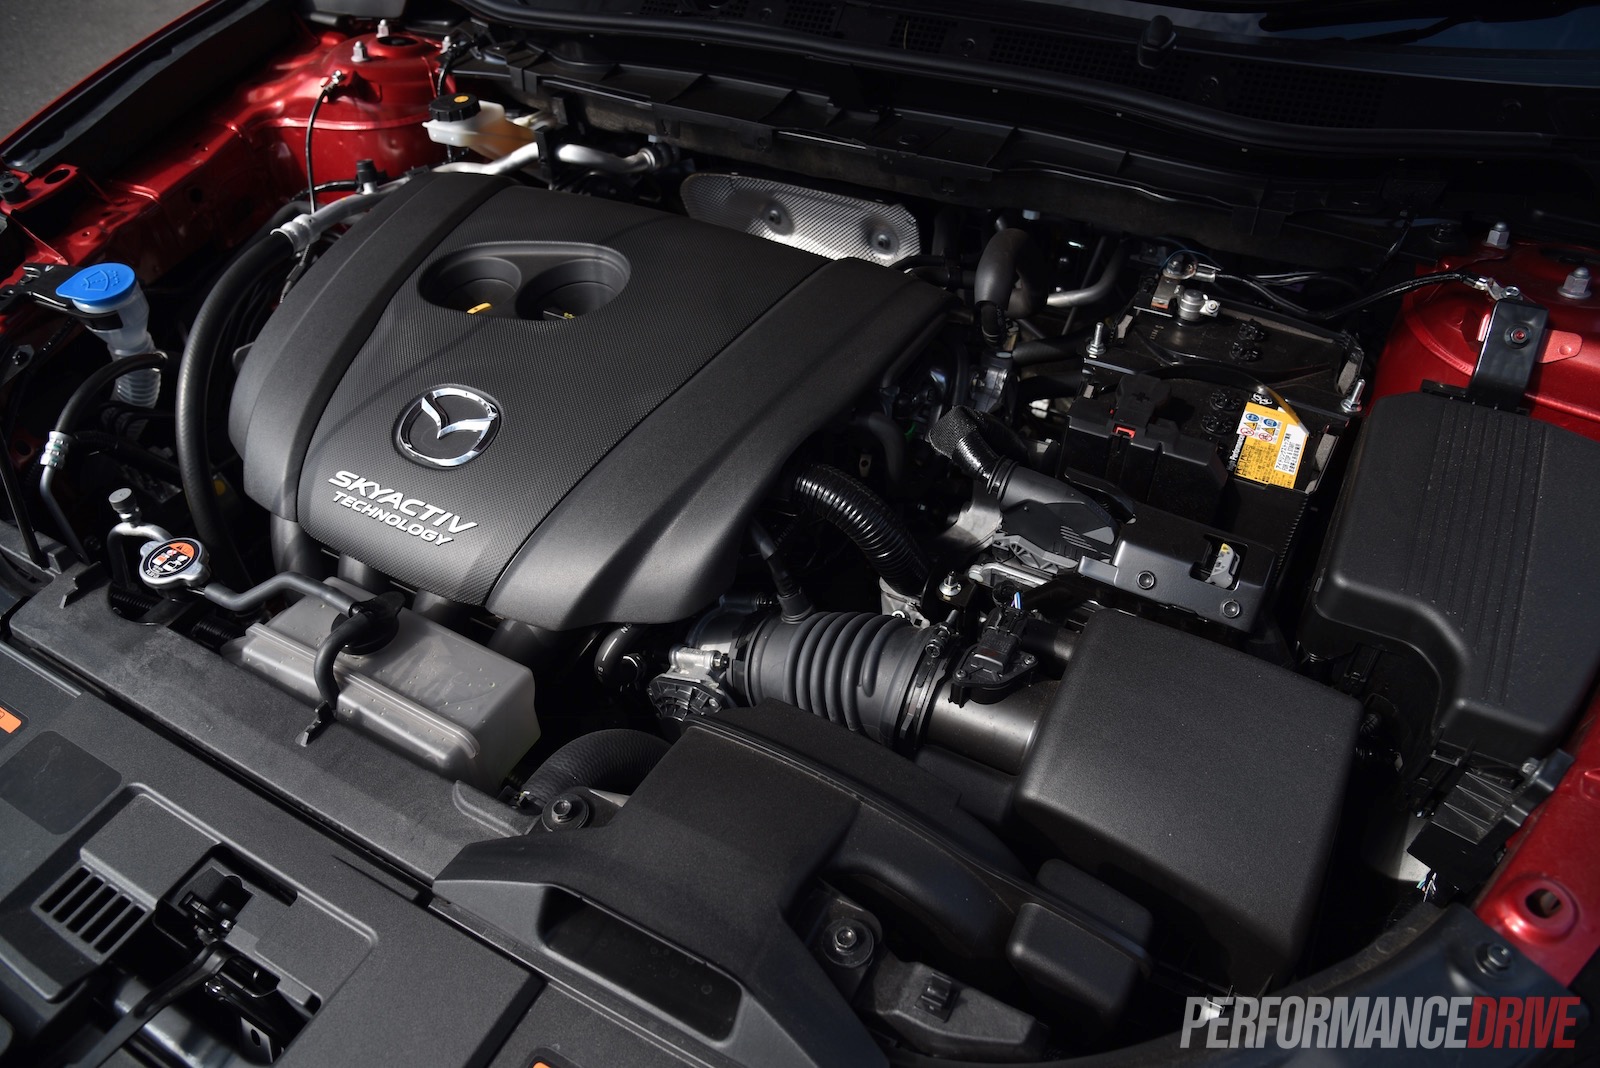 Мазда сх5 моторы. Mazda cx5 engines. Мазда СХ-5 мотор. Мазда CX 9 двигатель. Двигатель Mazda CX-5 2.5 Turbo.